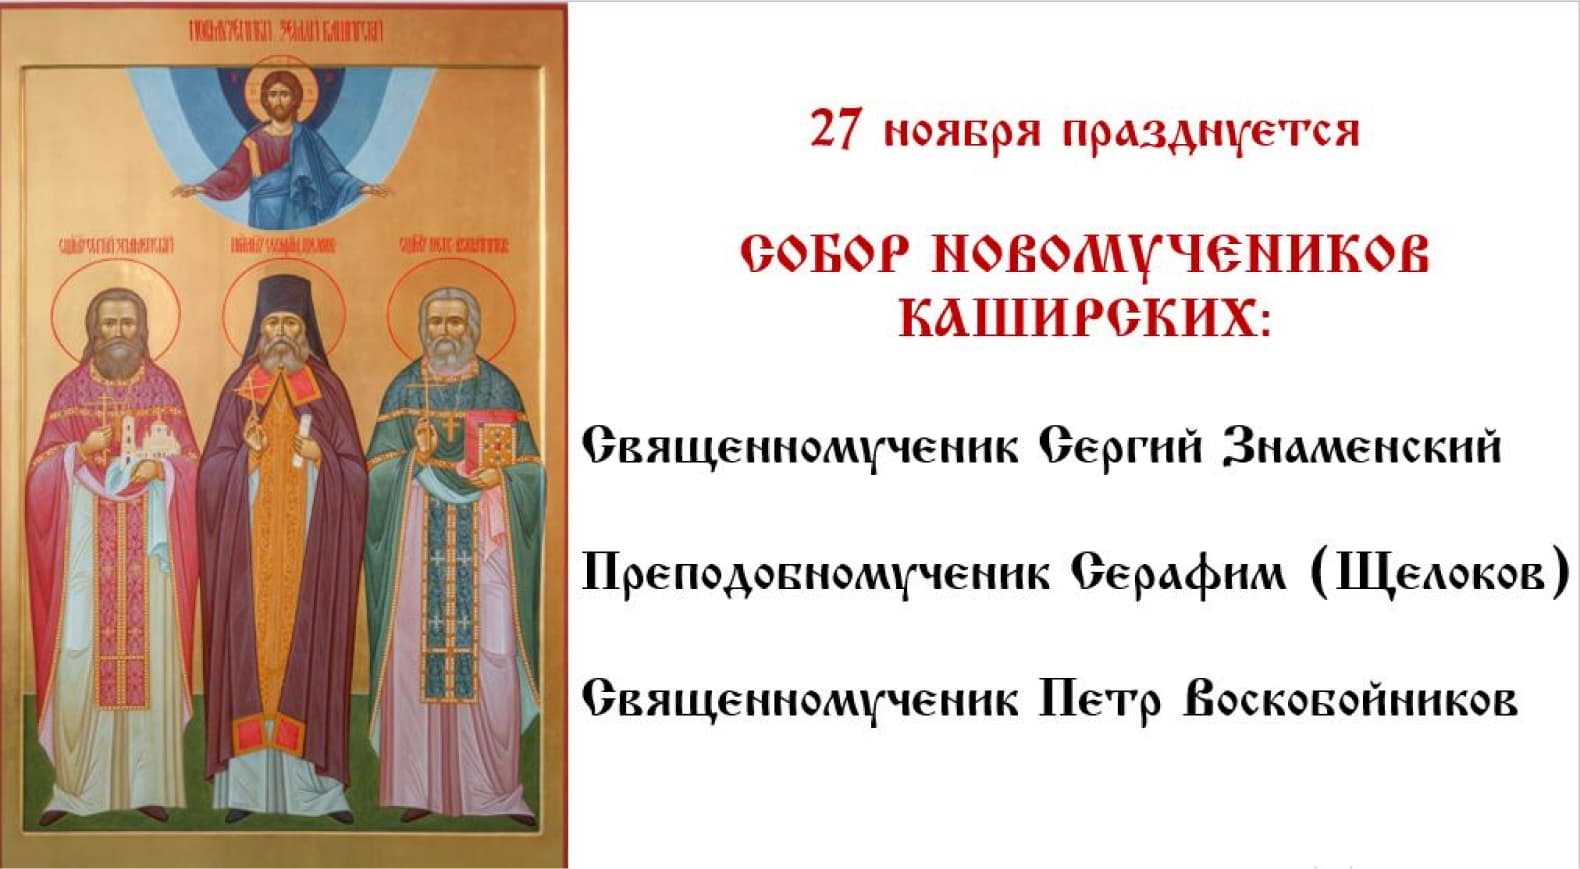 27 ноября празднуется Собор новомучеников Каширских